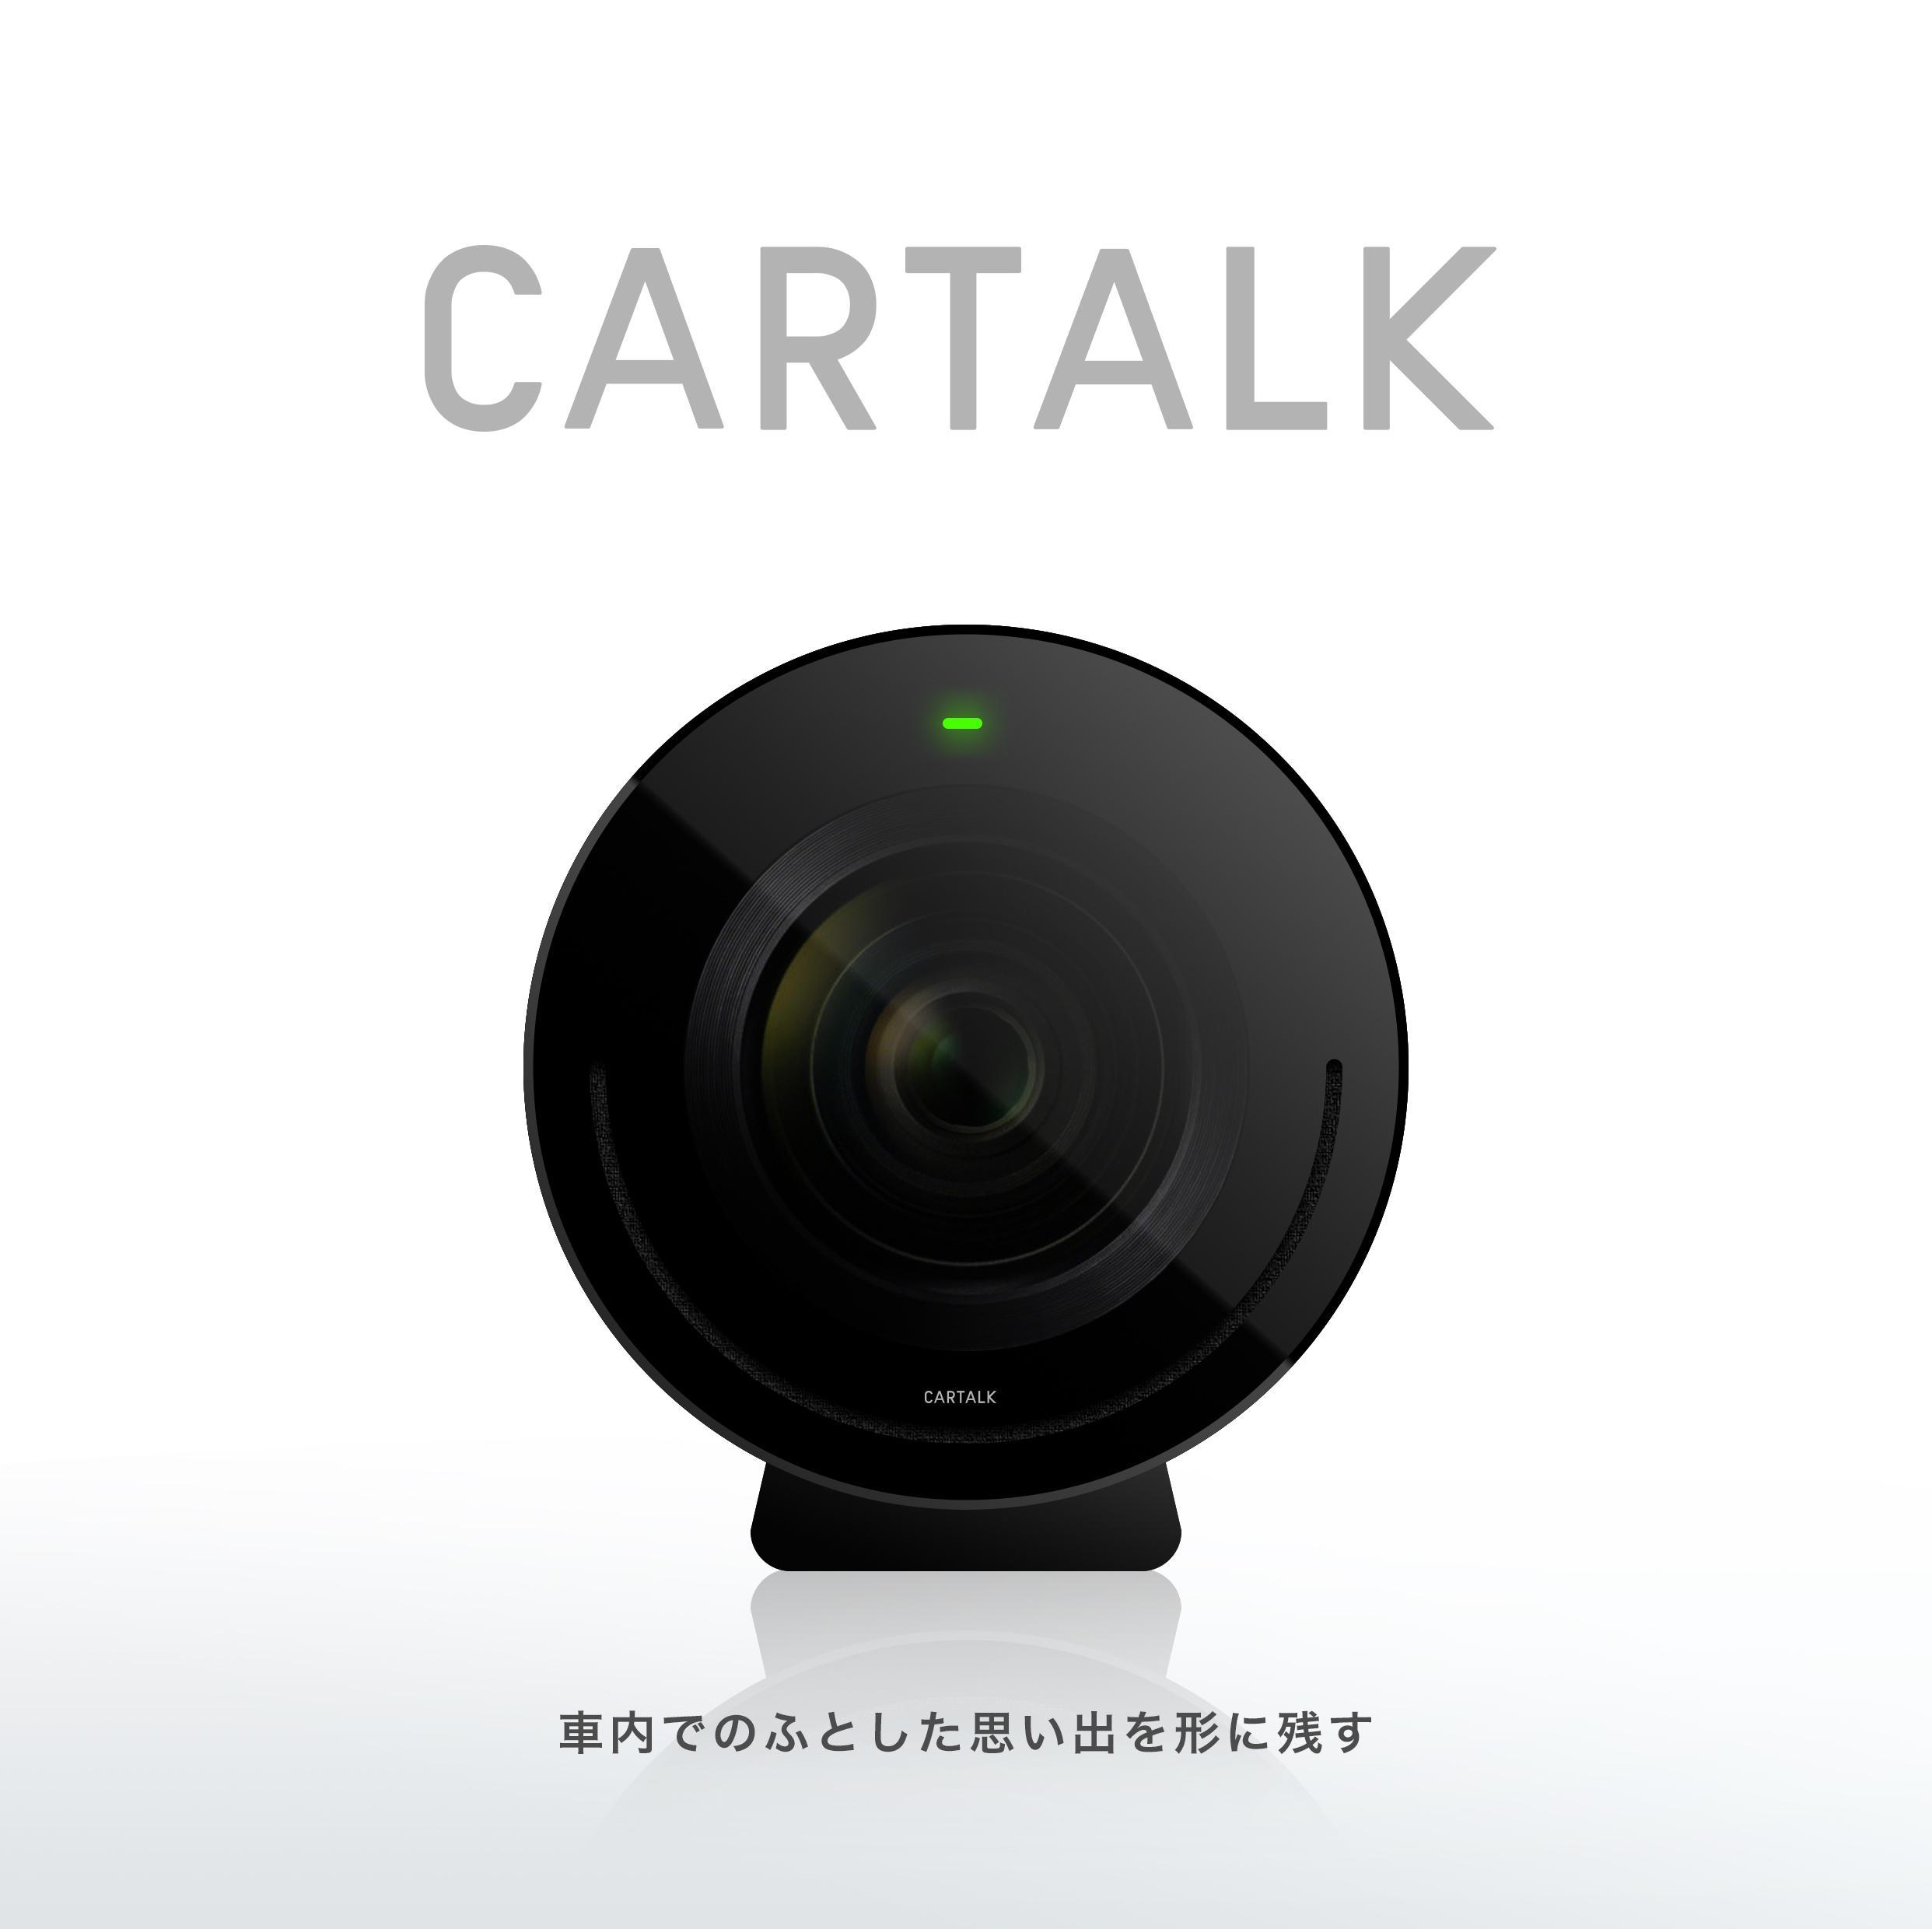 車中の思い出を記録するログカメラ「CARTALK」の公式アカウントです。車内での大切な思い出をCARTALKによって残していくことを目標にしています。